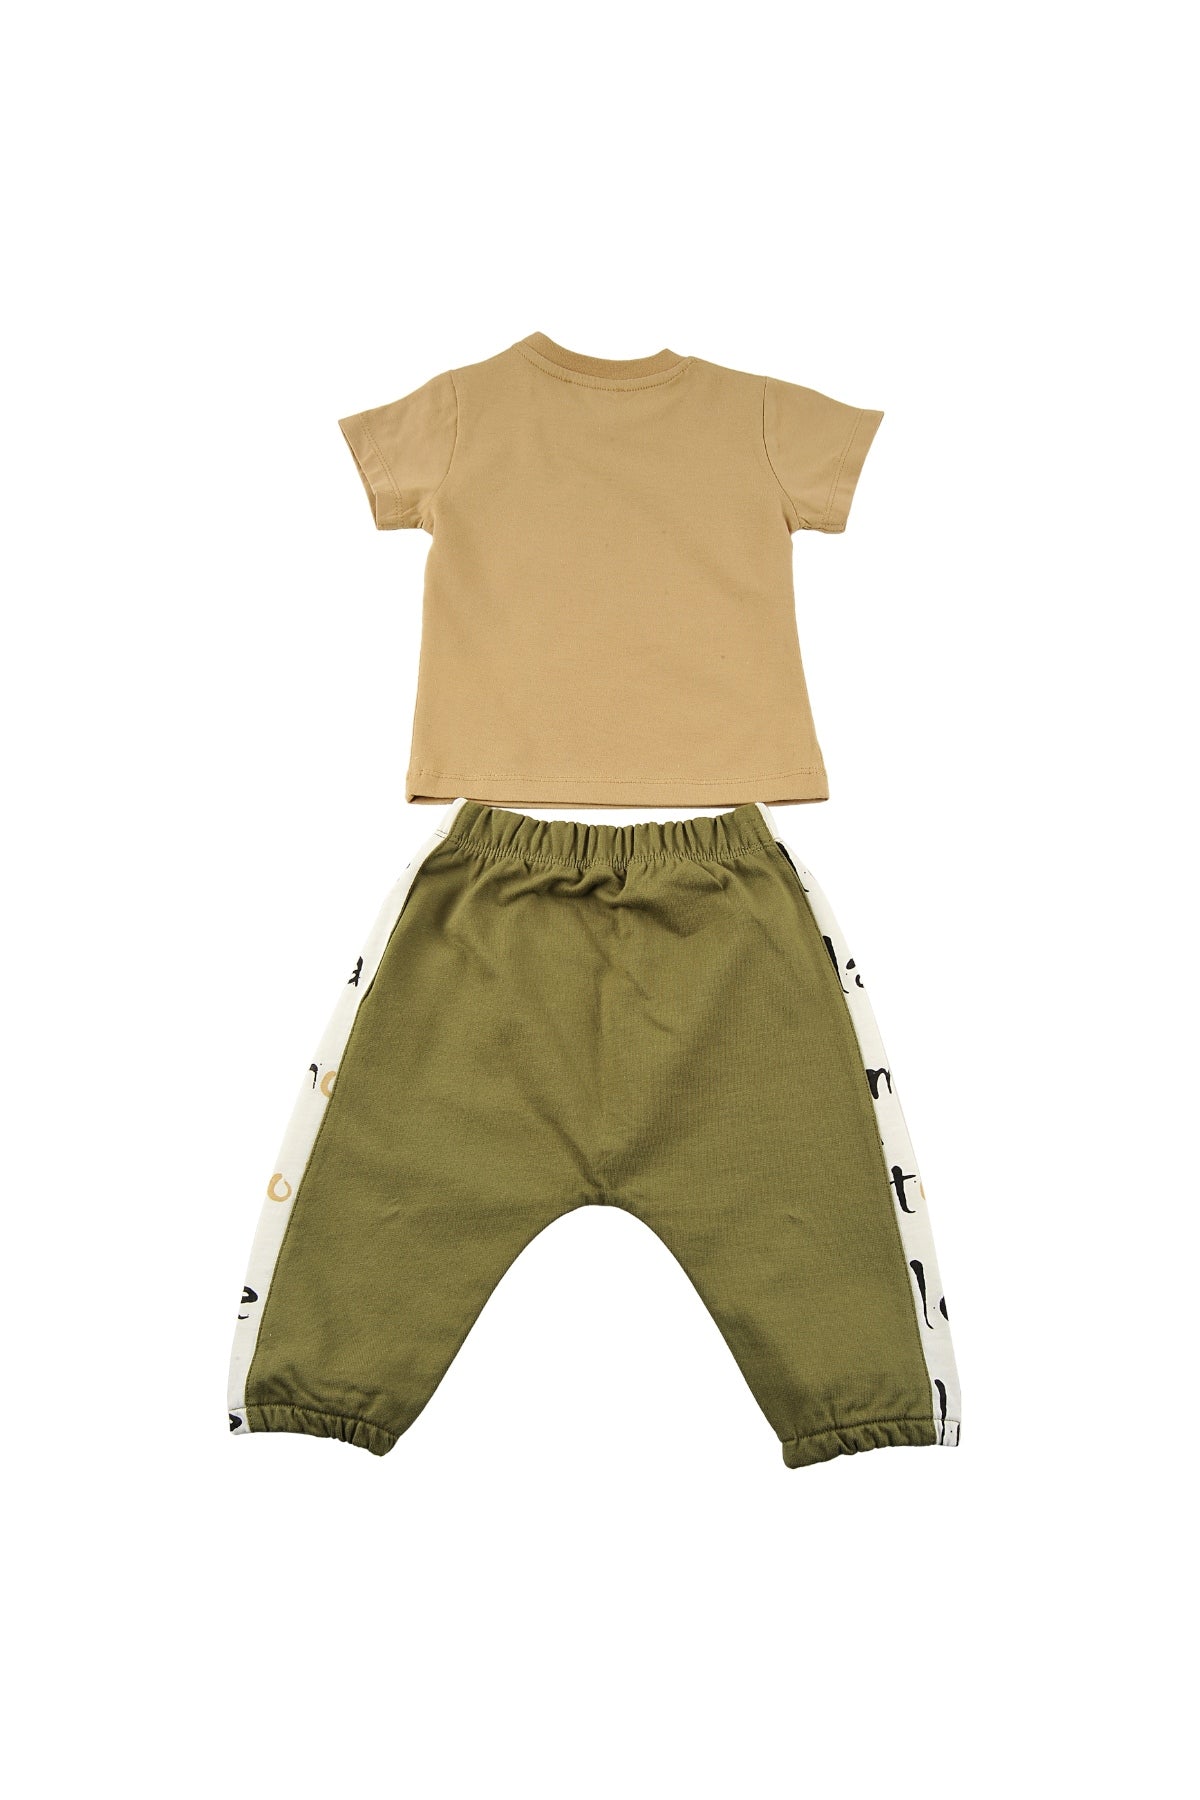 Erkek Bebek Yazı Baskılı Cepli T-Shirt ve Lastikli Alt Takım (6ay-4yaş)-3